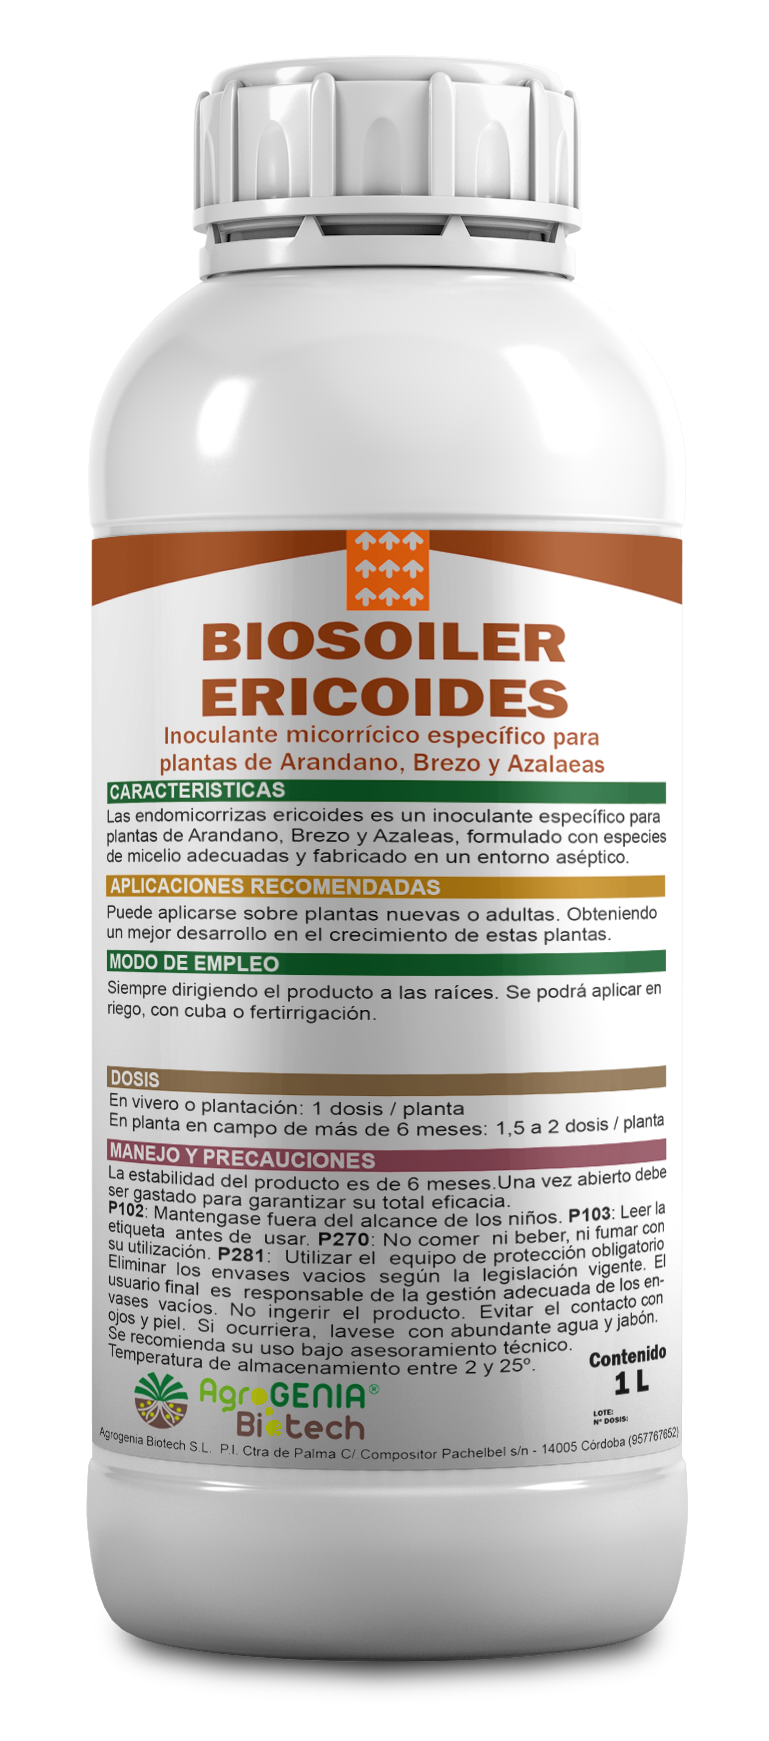 Biofertilizante biosoiler